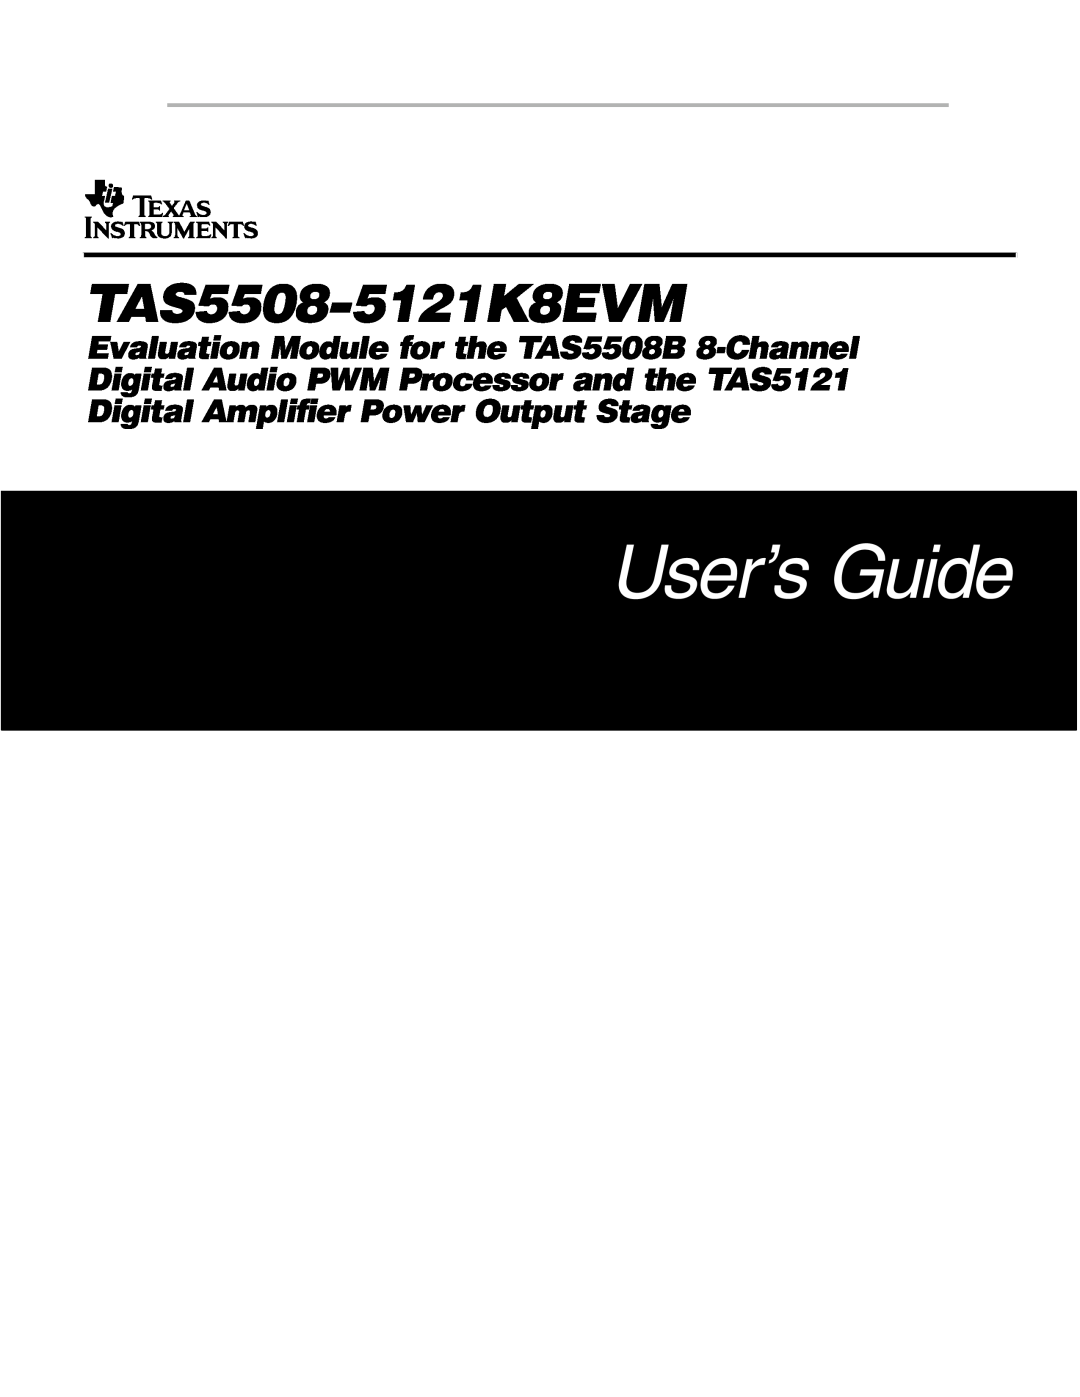 Texas Instruments TAS5121, TAS5508-5121K8EVM manual User’s Guide, TAS5508−5121K8EVM 